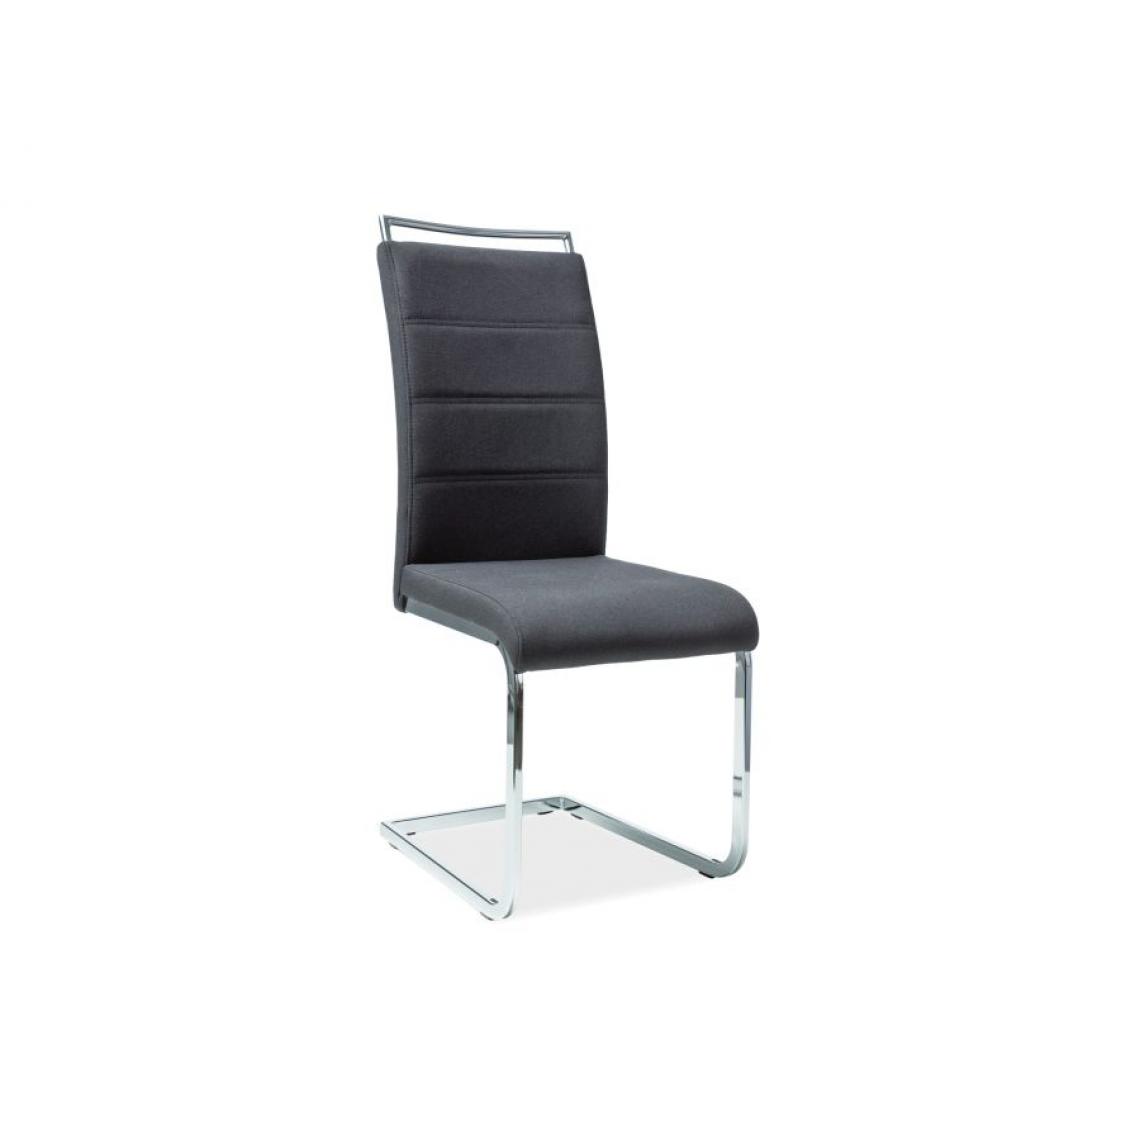 Hucoco - SKARA | Chaise élégante style minimaliste | Dimensions 102x41x42 cm | Rembourrage en tissu | Chaise salle à manger bureau - Noir - Chaises